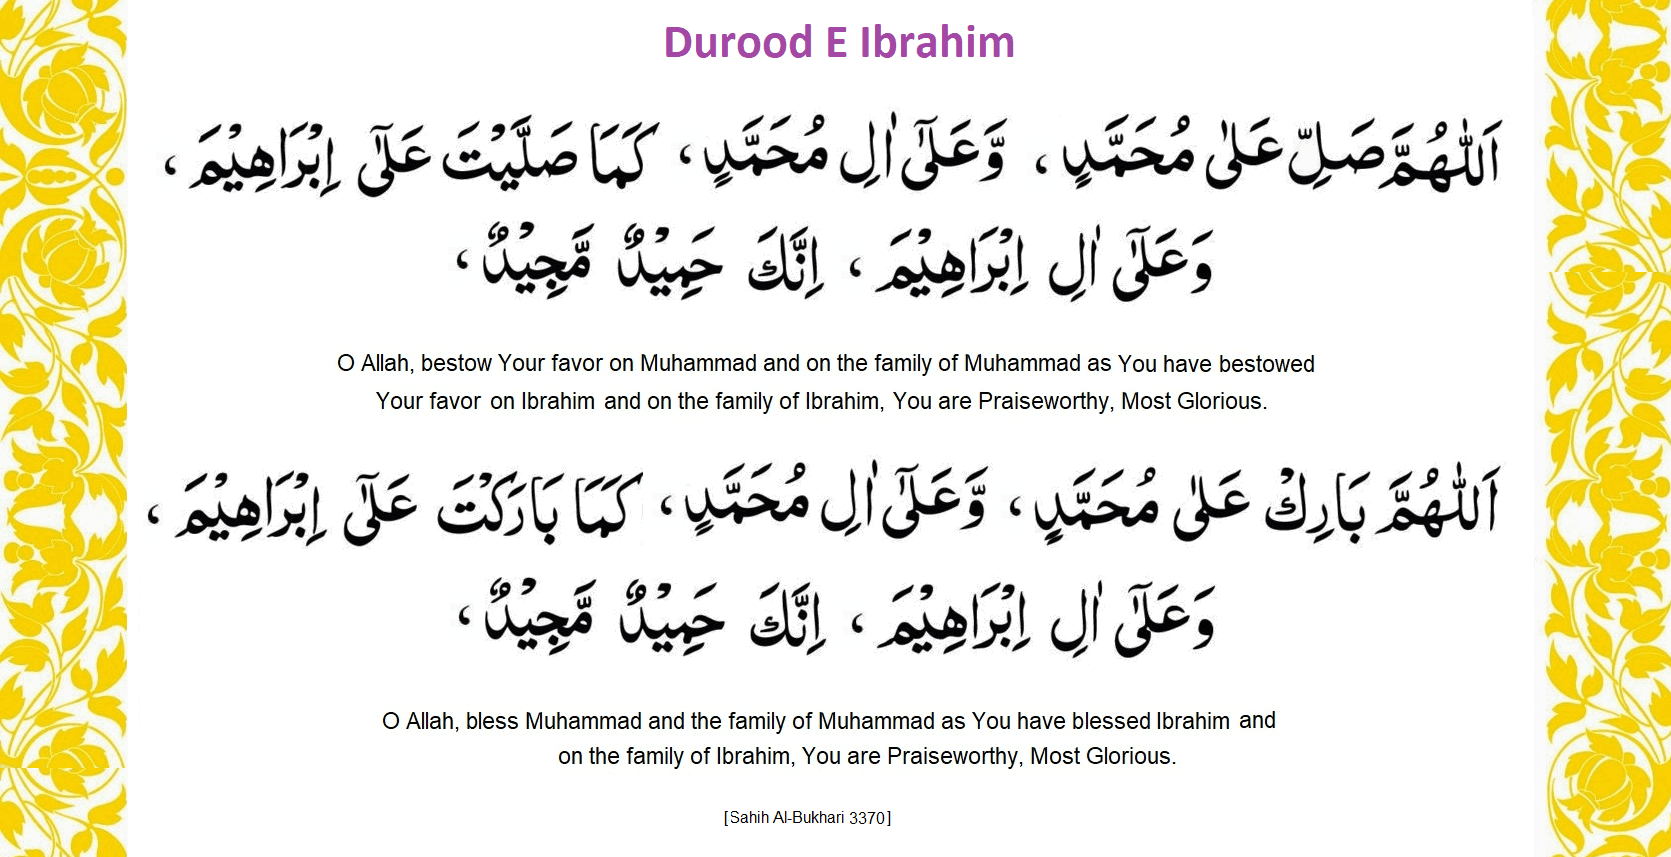 Durood-E-Ibrahim